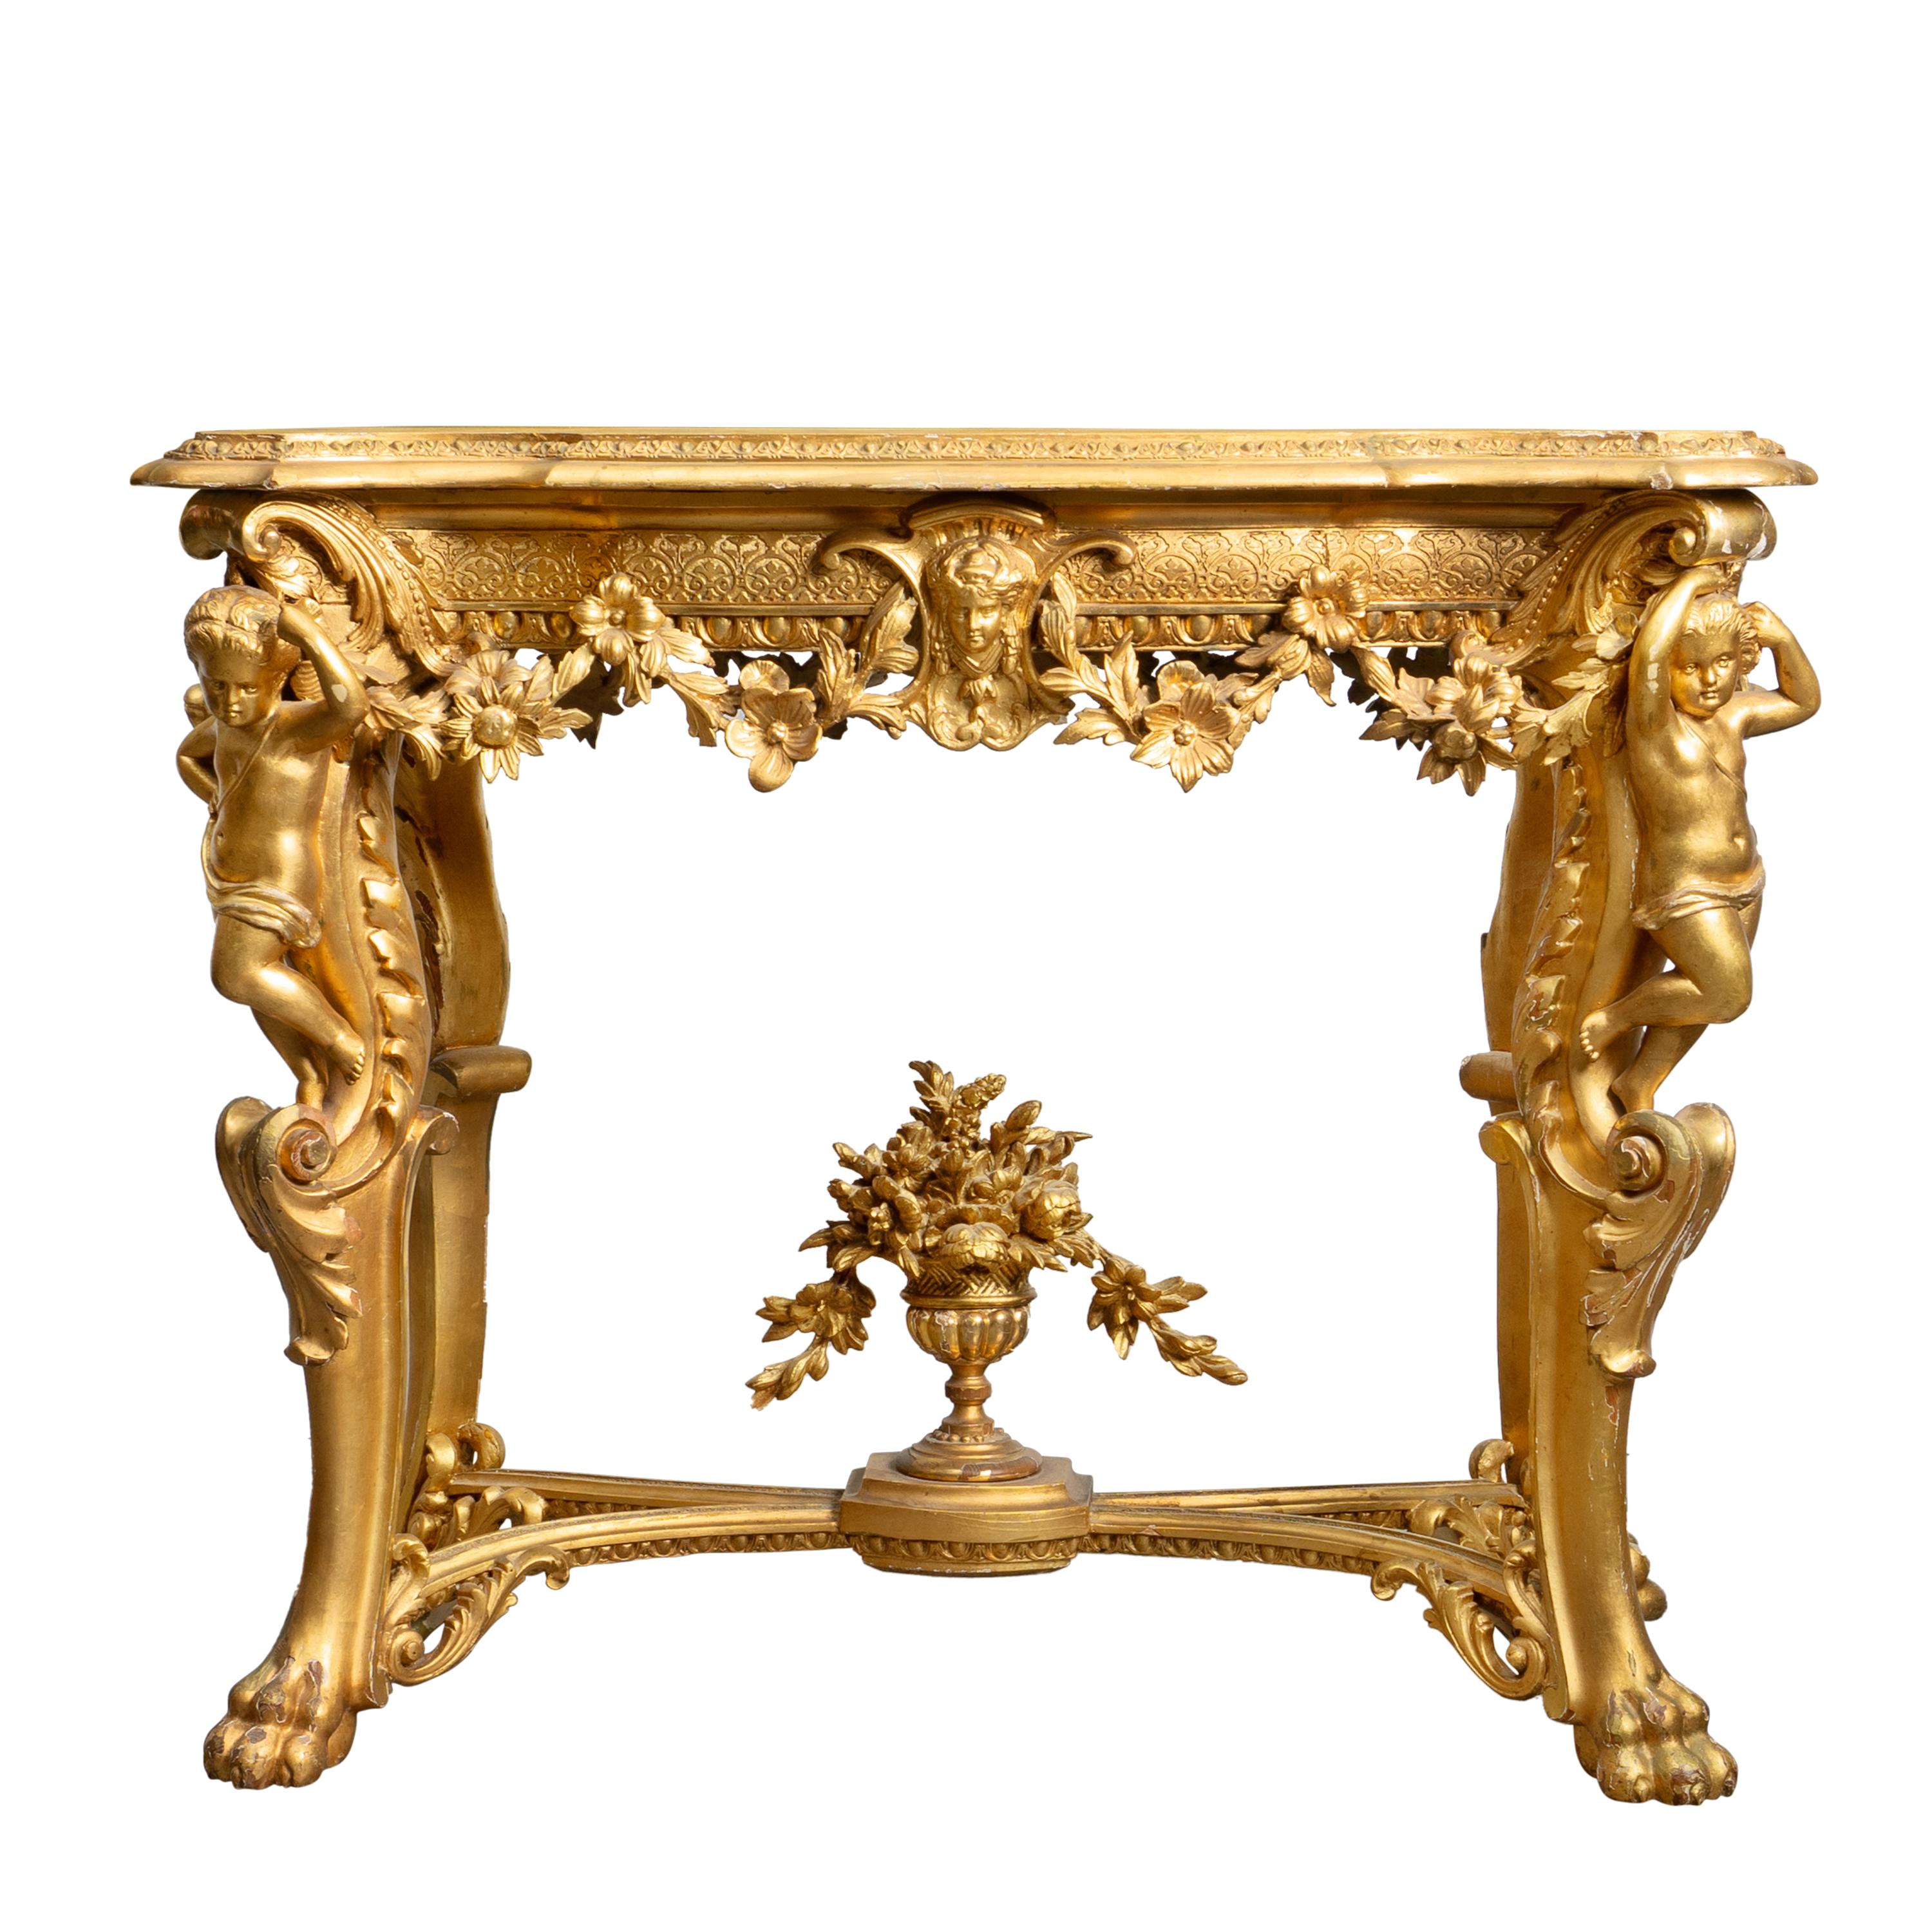 La description donne une image vivante d'une table d'appoint française du XIXe siècle, de style Louis XV, à la fabrication complexe. Le design orné de la table est une marque de fabrique de cette période, mettant en valeur les détails de l'artisanat